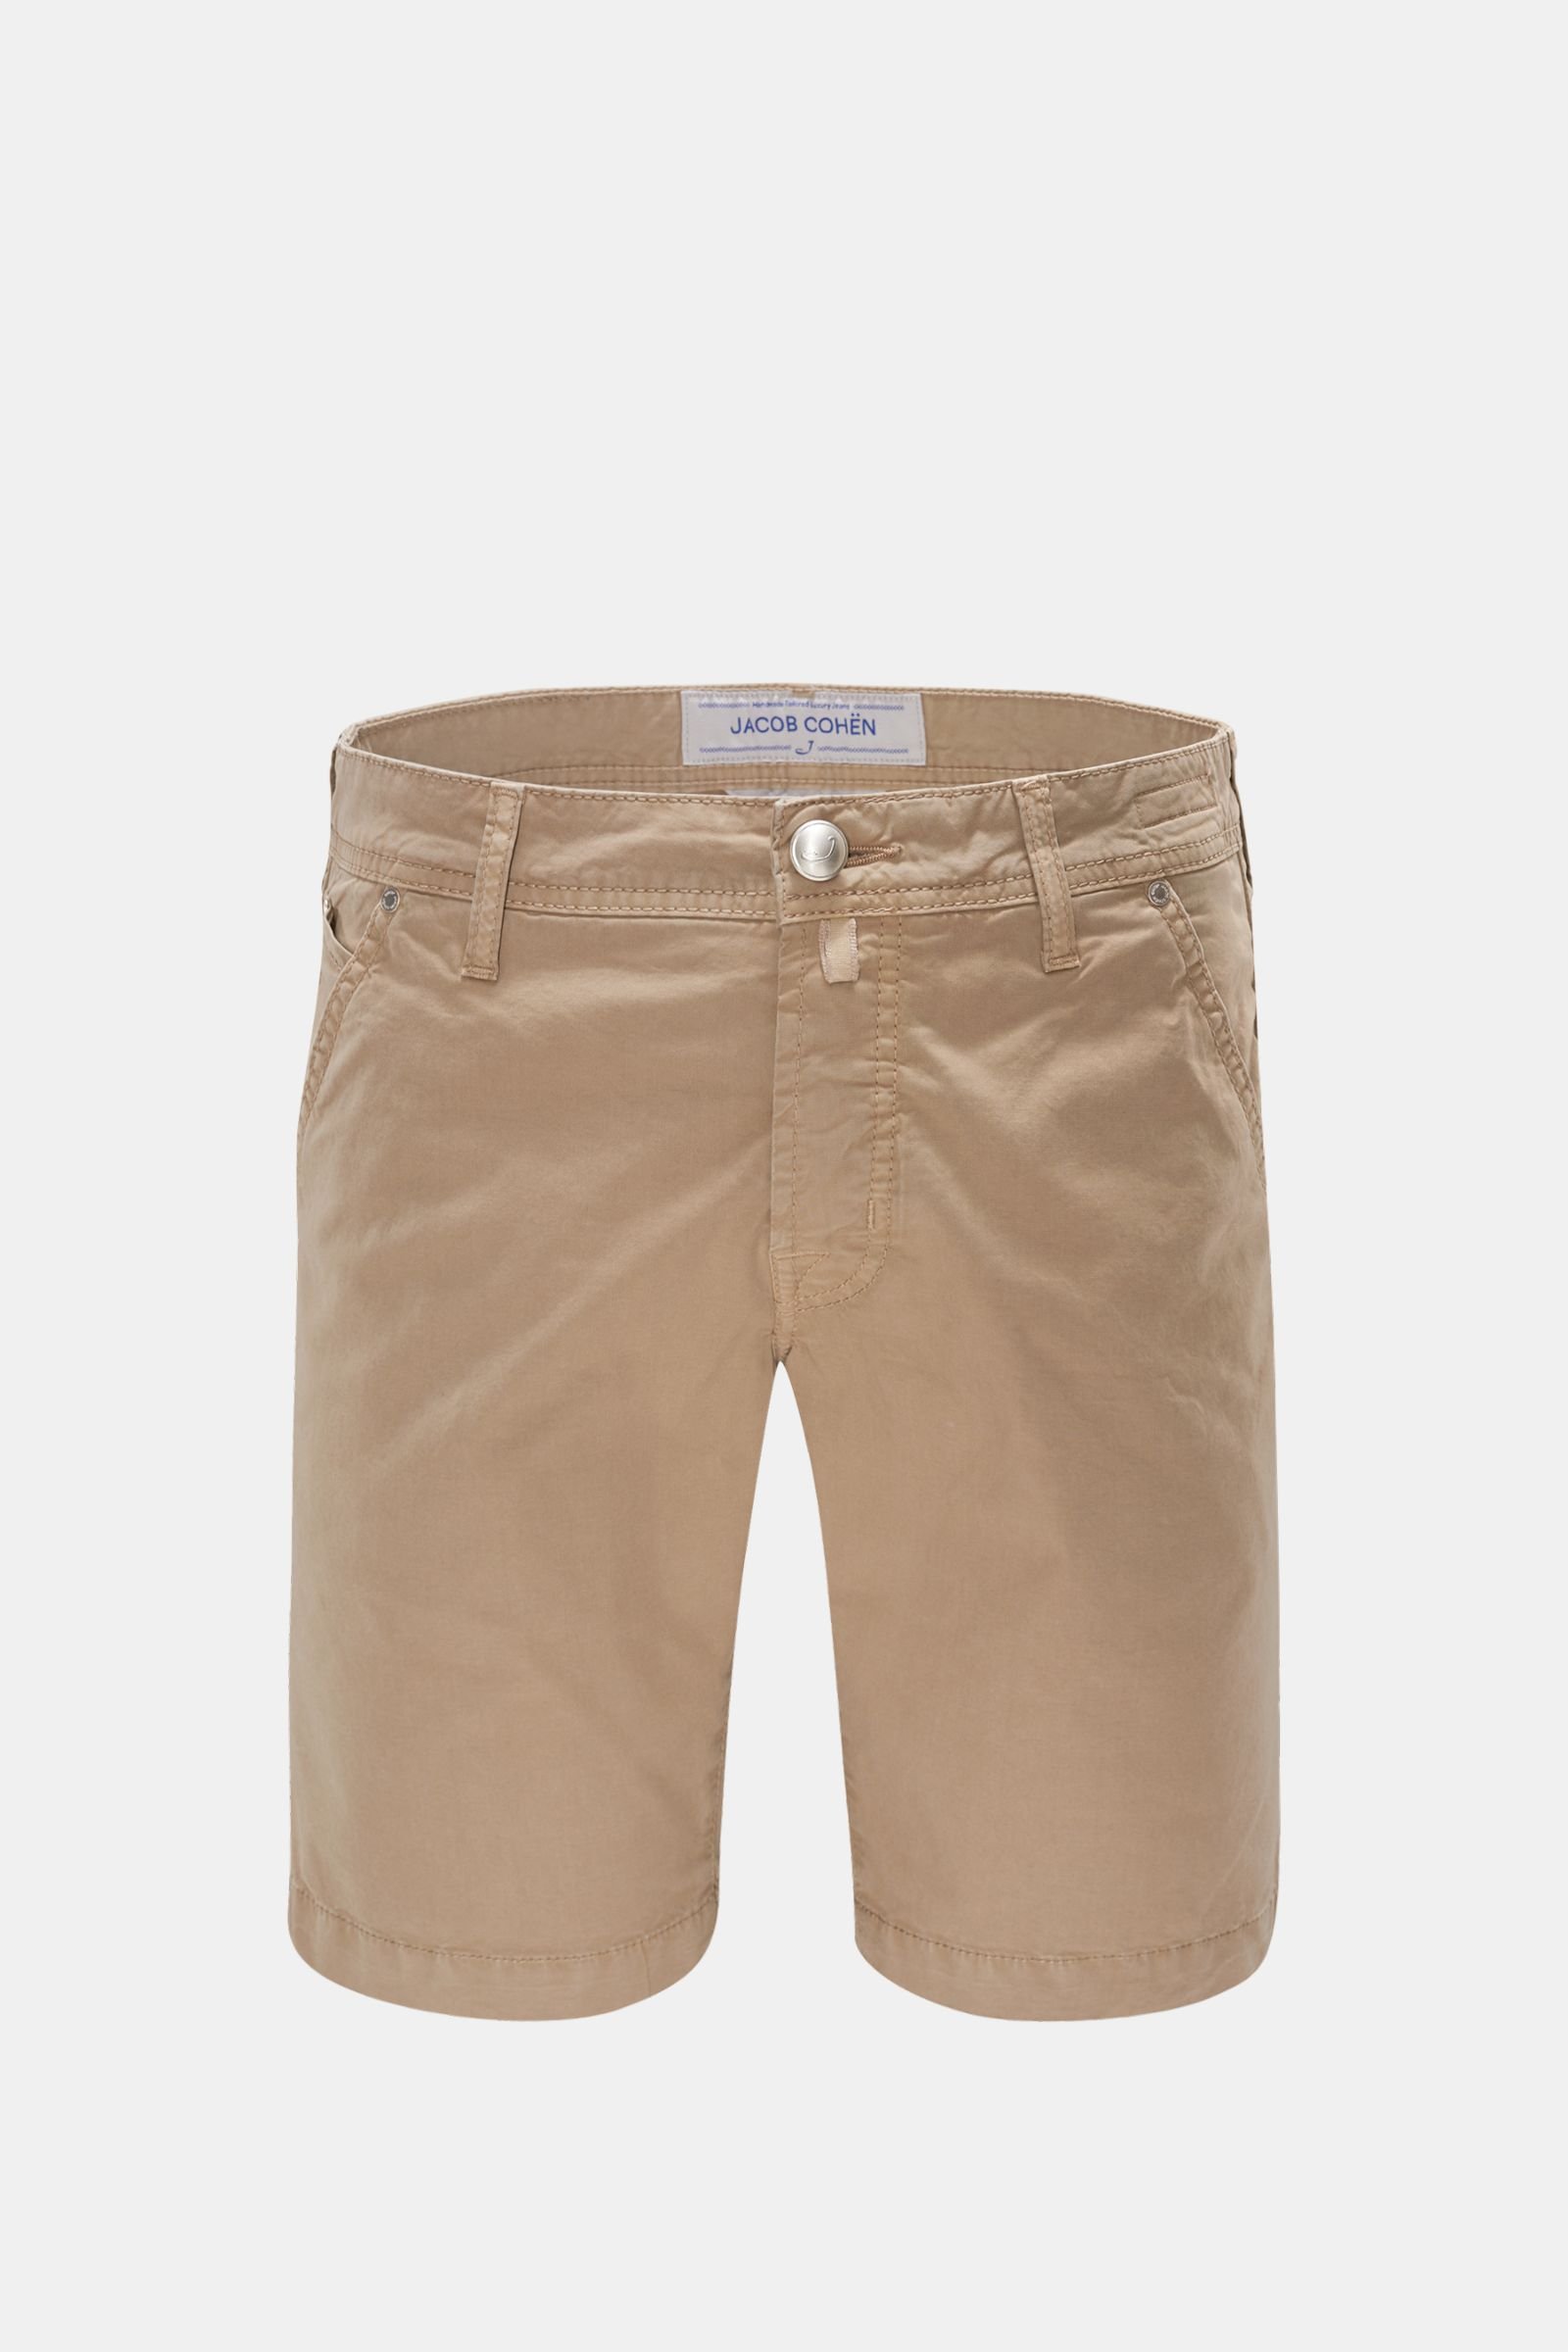 Bermuda shorts 'J6613 Comfort Slim Fit' light brown